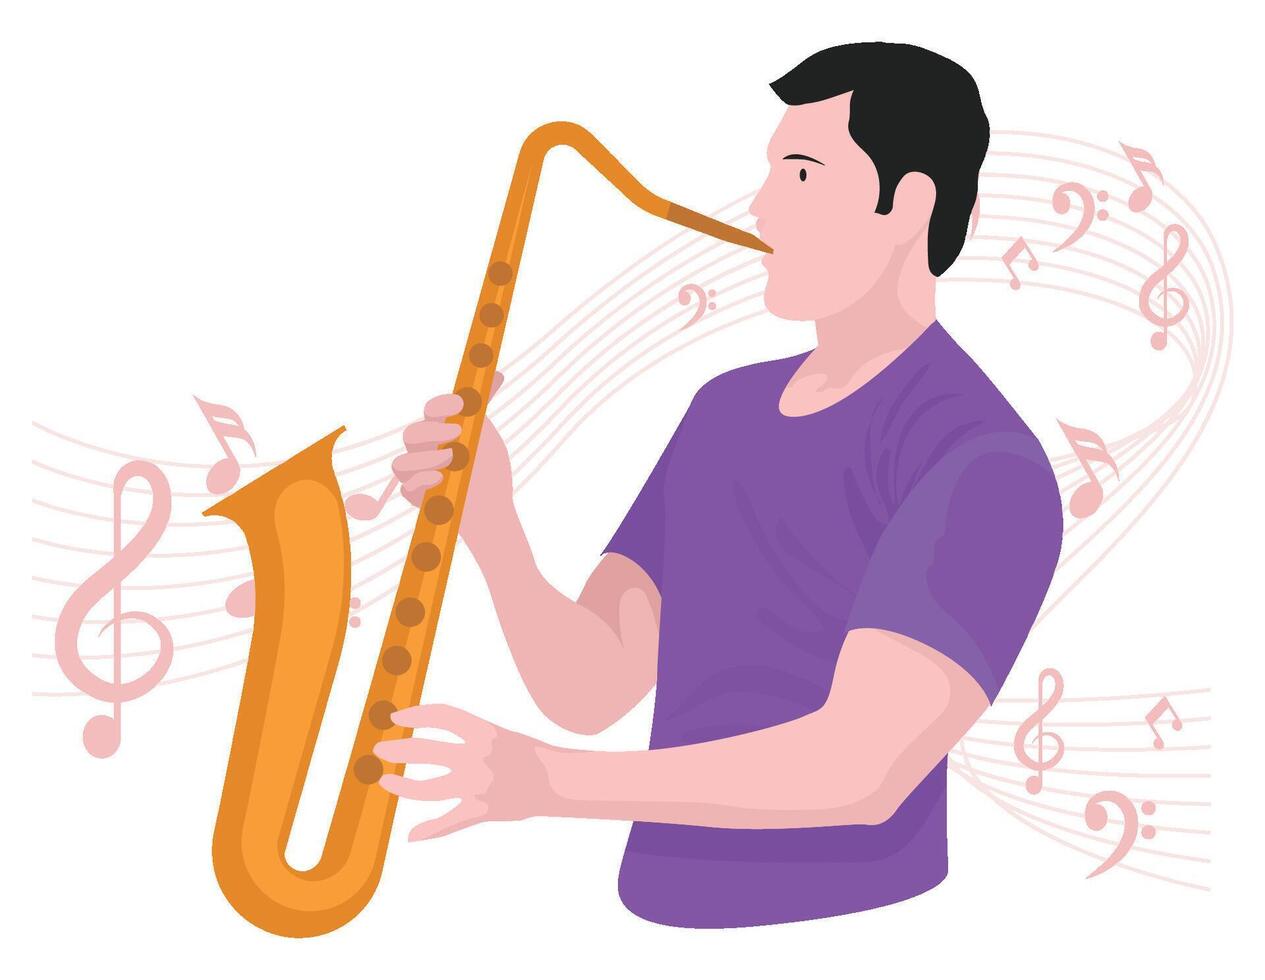 chico jugando saxofón - musical rock banda ilustración vector